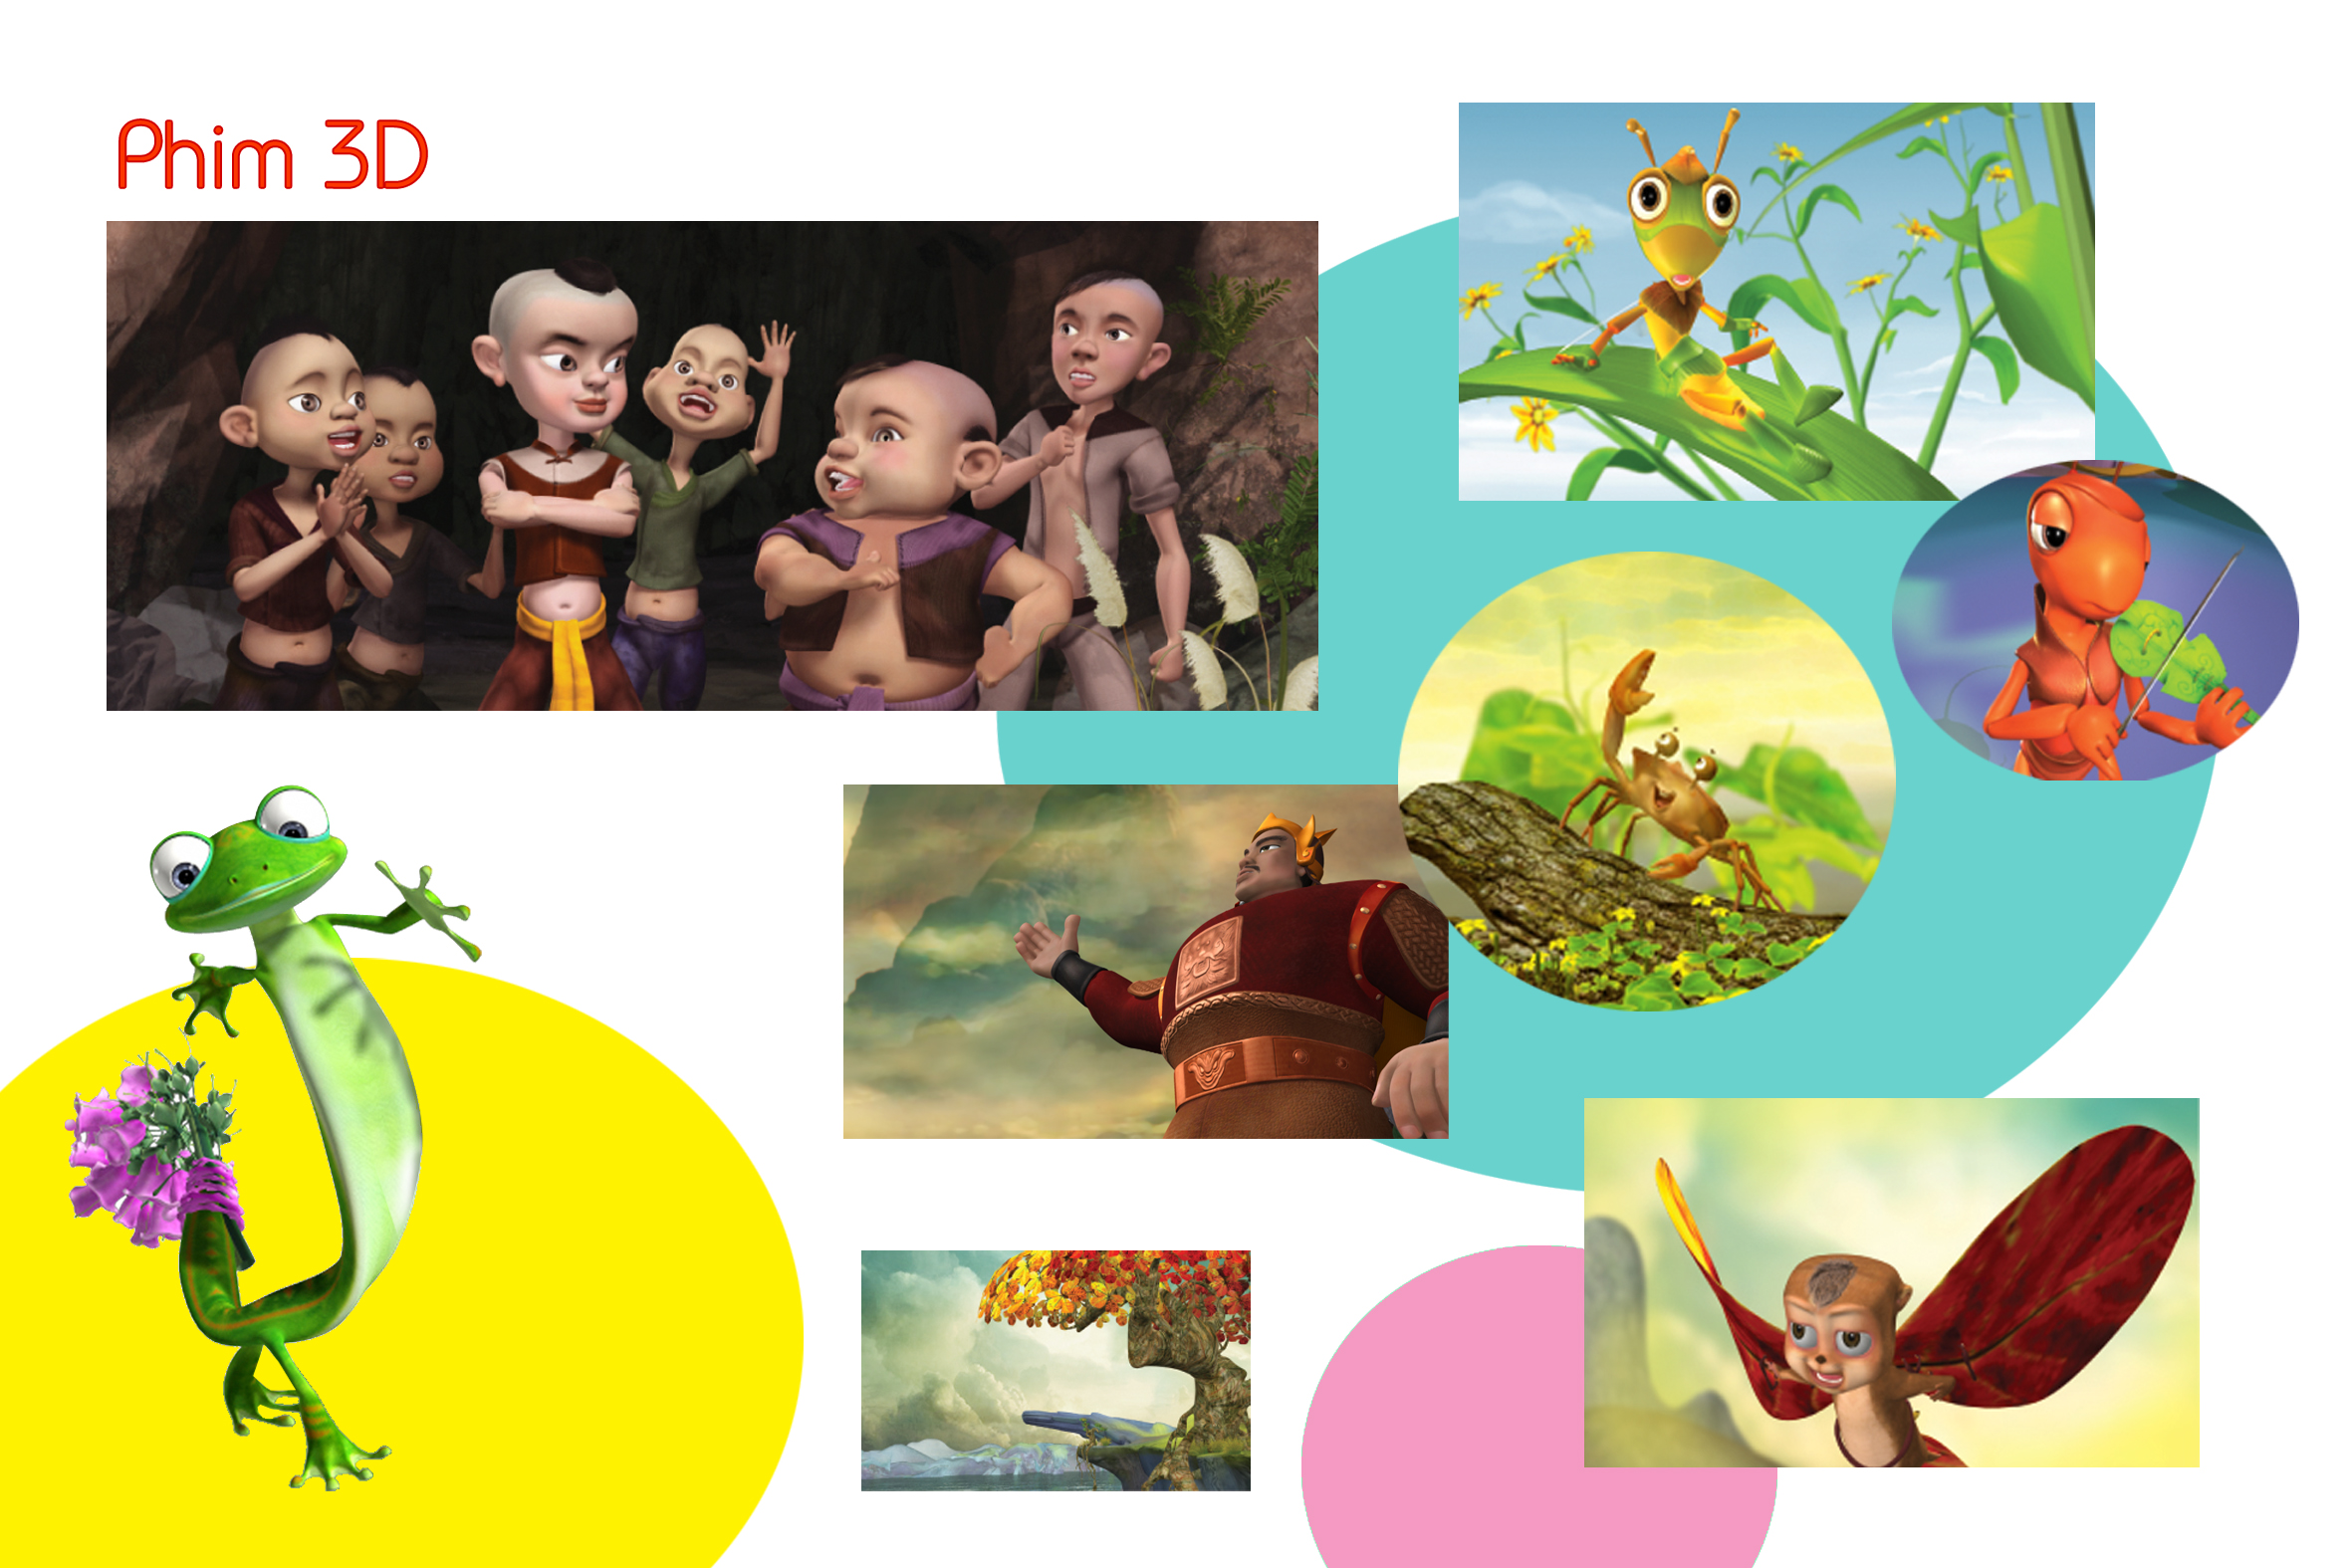 Phim hoạt hình Việt Nam: Cùng nhau khám phá thế giới đầy màu sắc của phim hoạt hình Việt Nam tại đây! Tận hưởng những câu chuyện đầy ý nghĩa và tình cảm dành cho cả gia đình. Hãy để những nhân vật đáng yêu truyền cảm hứng và niềm vui cho bạn bằng những hình ảnh đẹp và cuốn hút mà chúng tôi chia sẻ.